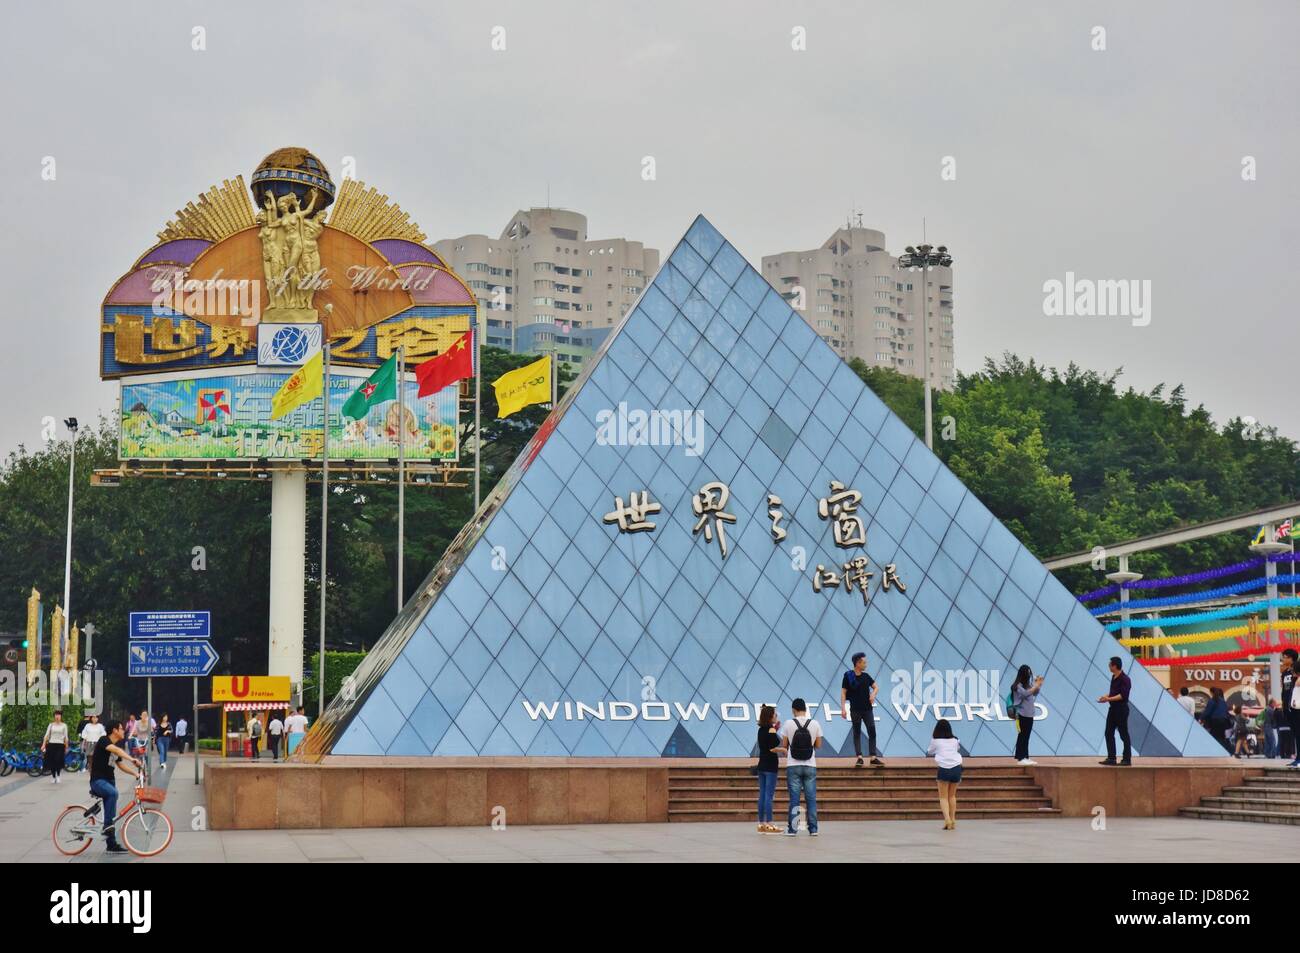 Vue de la fenêtre du monde Theme Park situé à Shenzhen, en Chine. Il comprend des reproductions de célèbres monuments du monde. Banque D'Images